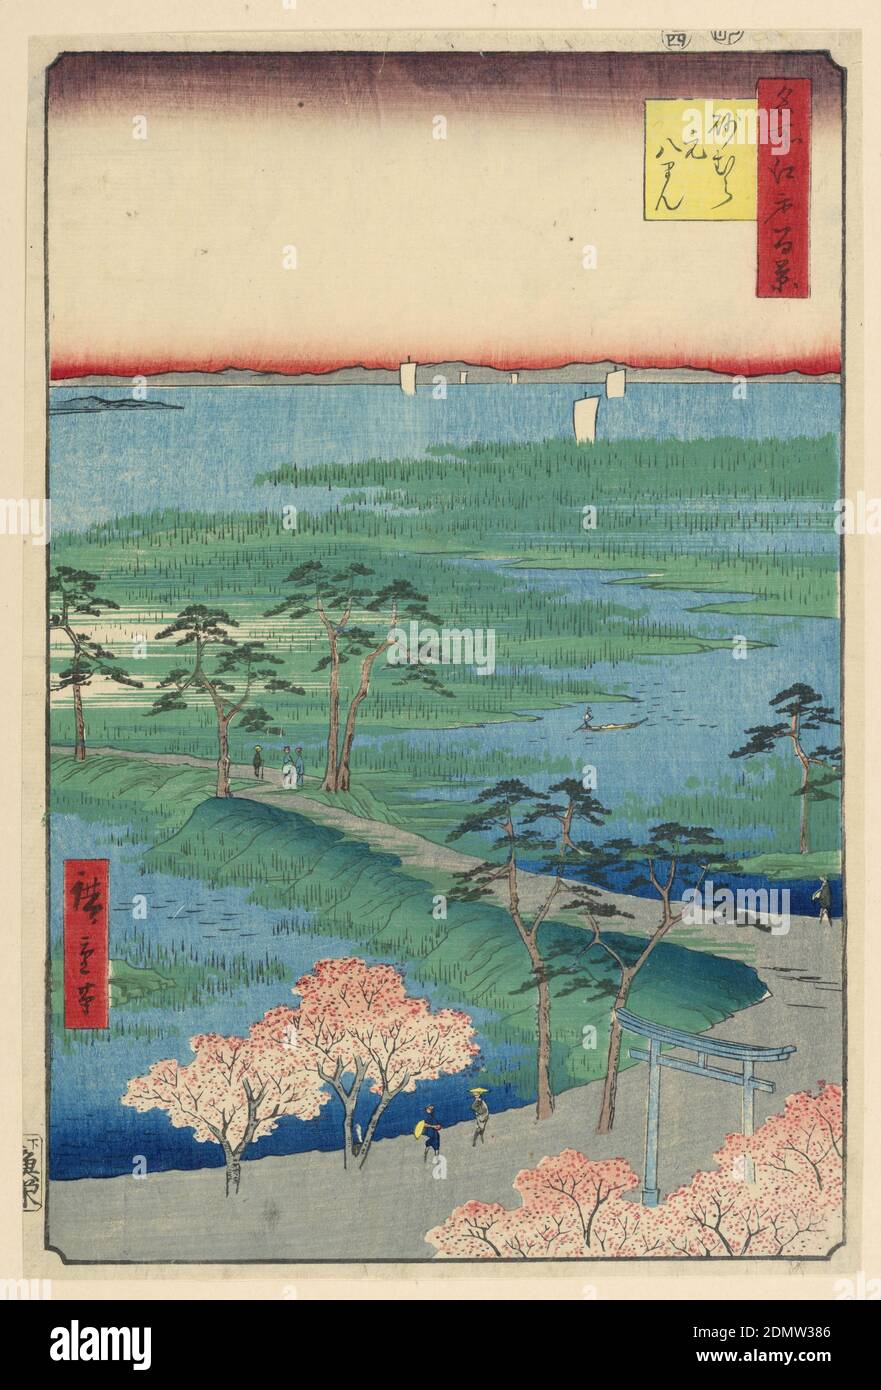 Ehemaliger Hachiman-Schrein, Sunamura (Sunamura Moto-Hachiman) aus der Serie hundert berühmte Ansichten von Edo, Ando Hiroshige, japanisch, 1797–1858, Holzblock-Druck in farbiger Tinte auf Papier, dieser Blick aus der Vogelperspektive blickt vom Moto-Hachiman-Schrein auf die Edo-Bucht. Direkt unten befindet sich der torii, der Eingang zum Schrein, und zwei prominente Figuren entlang des Weges. Eine Figur trägt einen großen gelben Hut, während die andere eine Pfeife raucht. Der Weg führt hinter diesen detaillierten Figuren zwischen den Sümpfen weiter und führt über die Bucht hinaus. Stockfoto